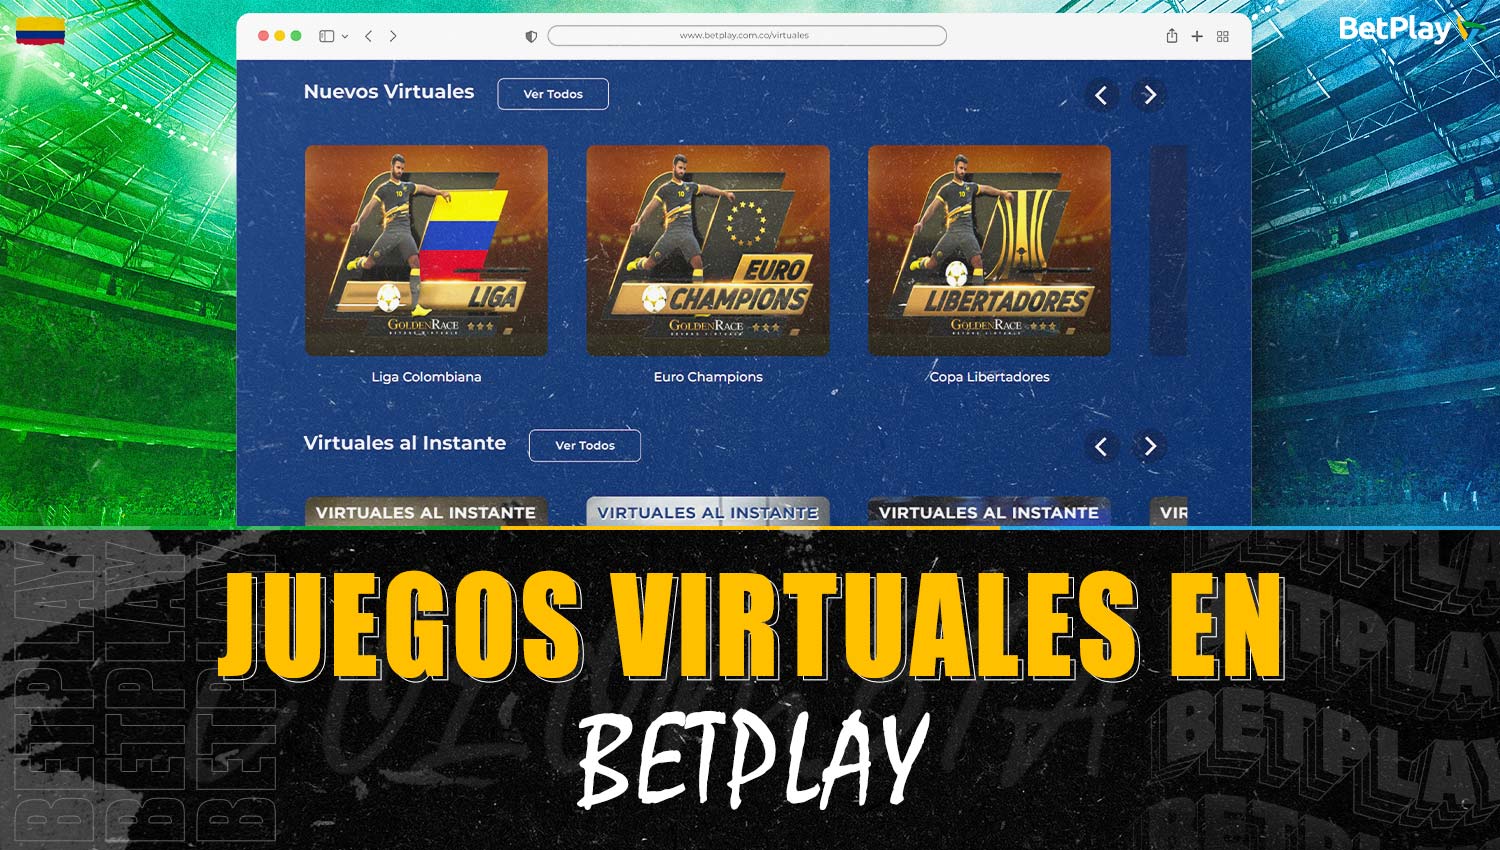 Los juegos virtuales están disponibles en la plataforma Betplay Colombia